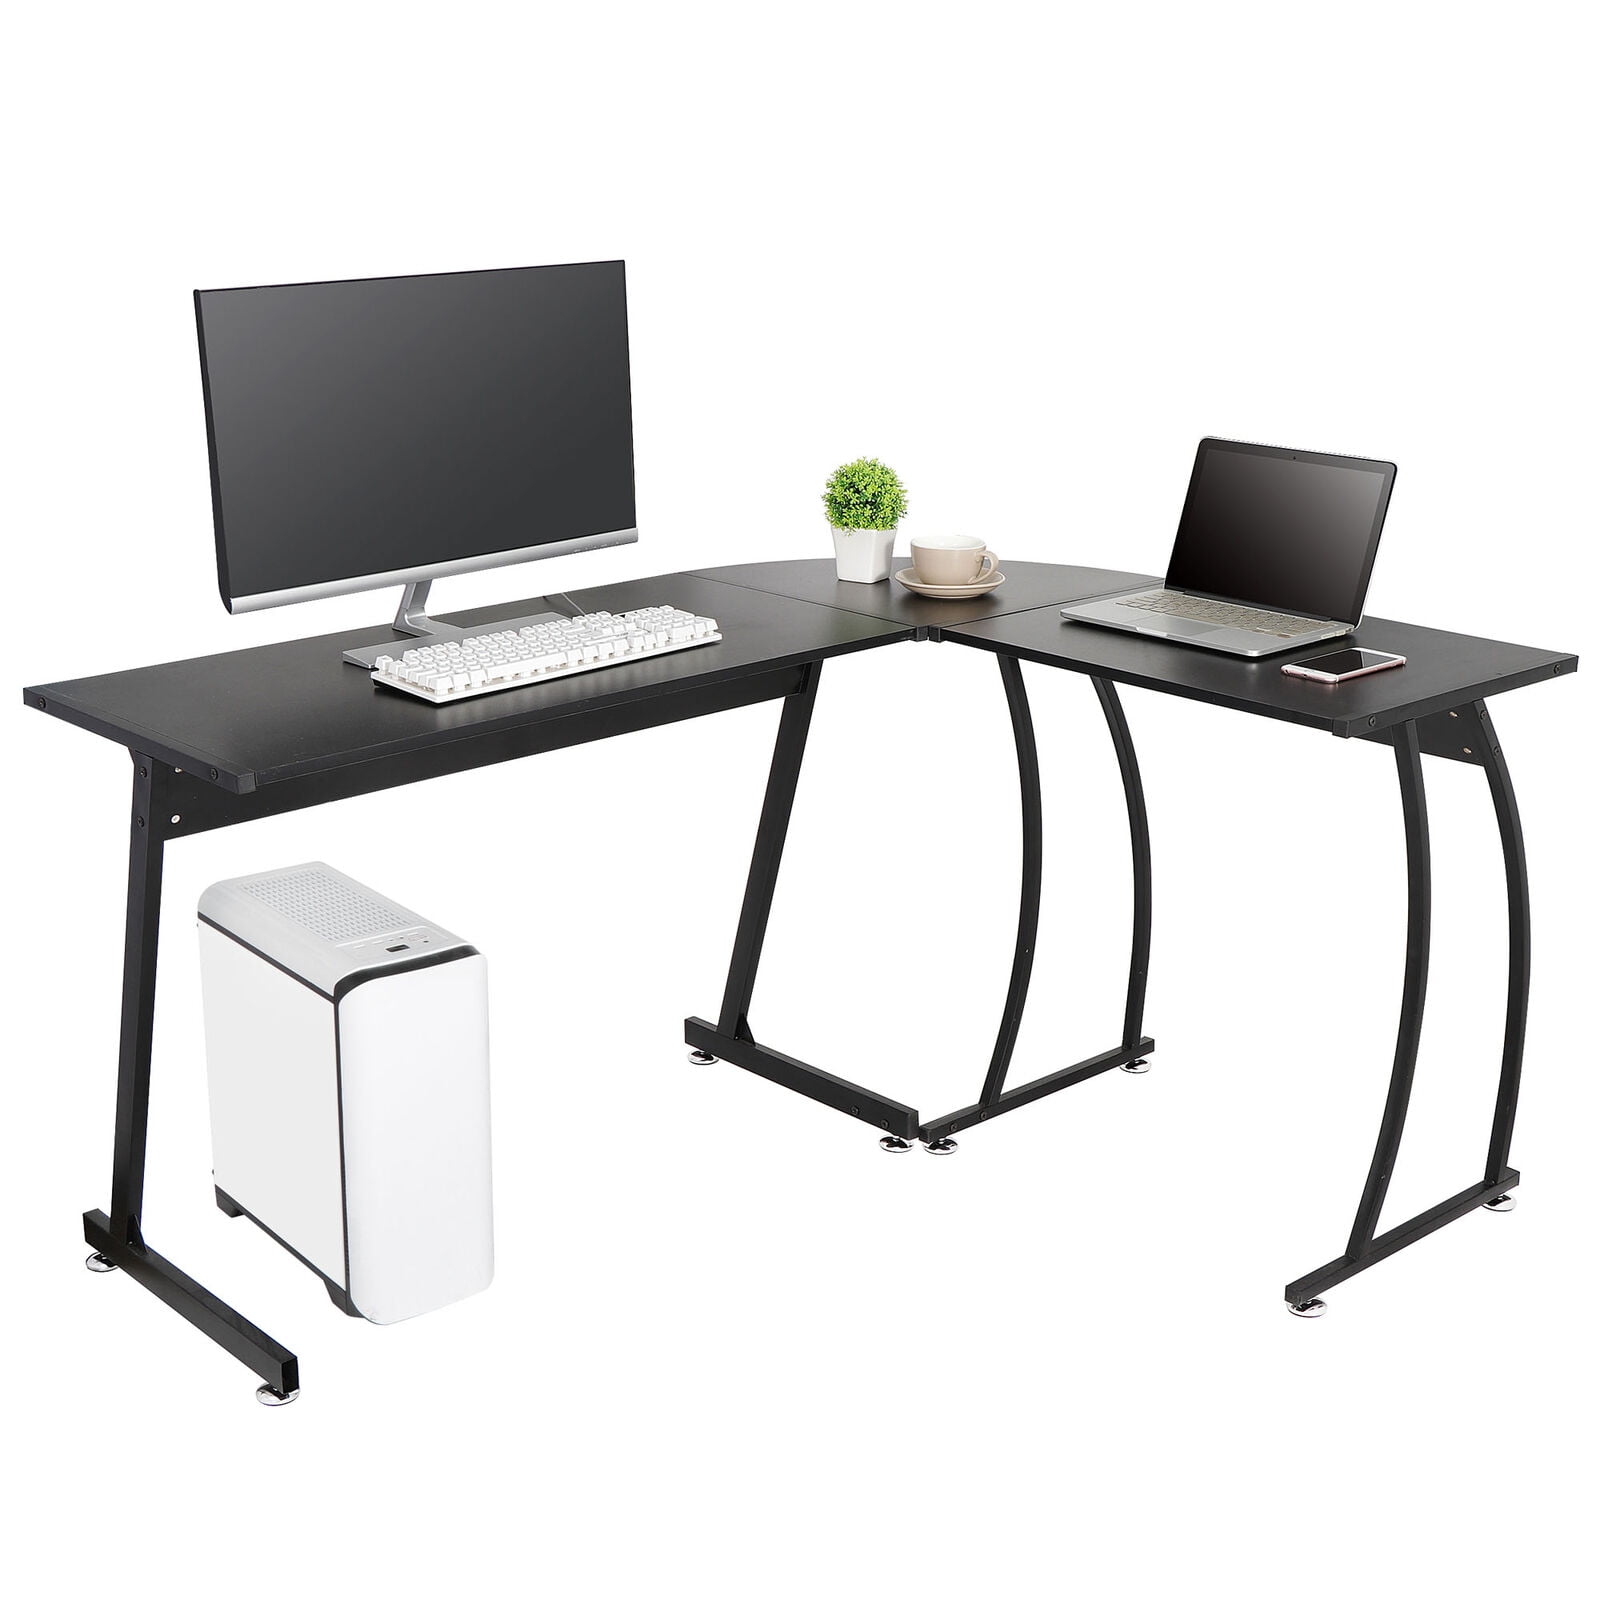 Home Office PC Corner Computer Desk Laptop Table Workstation Furniture Black 